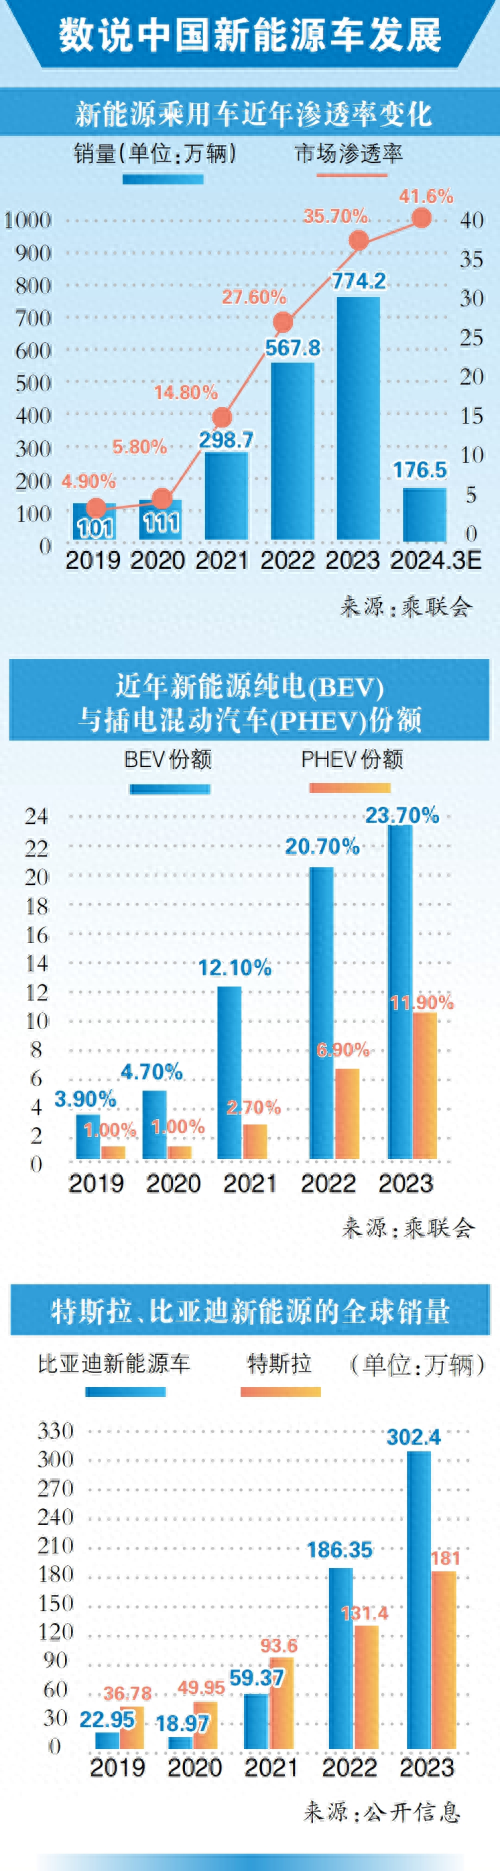 中国电动汽车百人会论坛上,比亚迪董事长王传福预测:未来3个月新能源